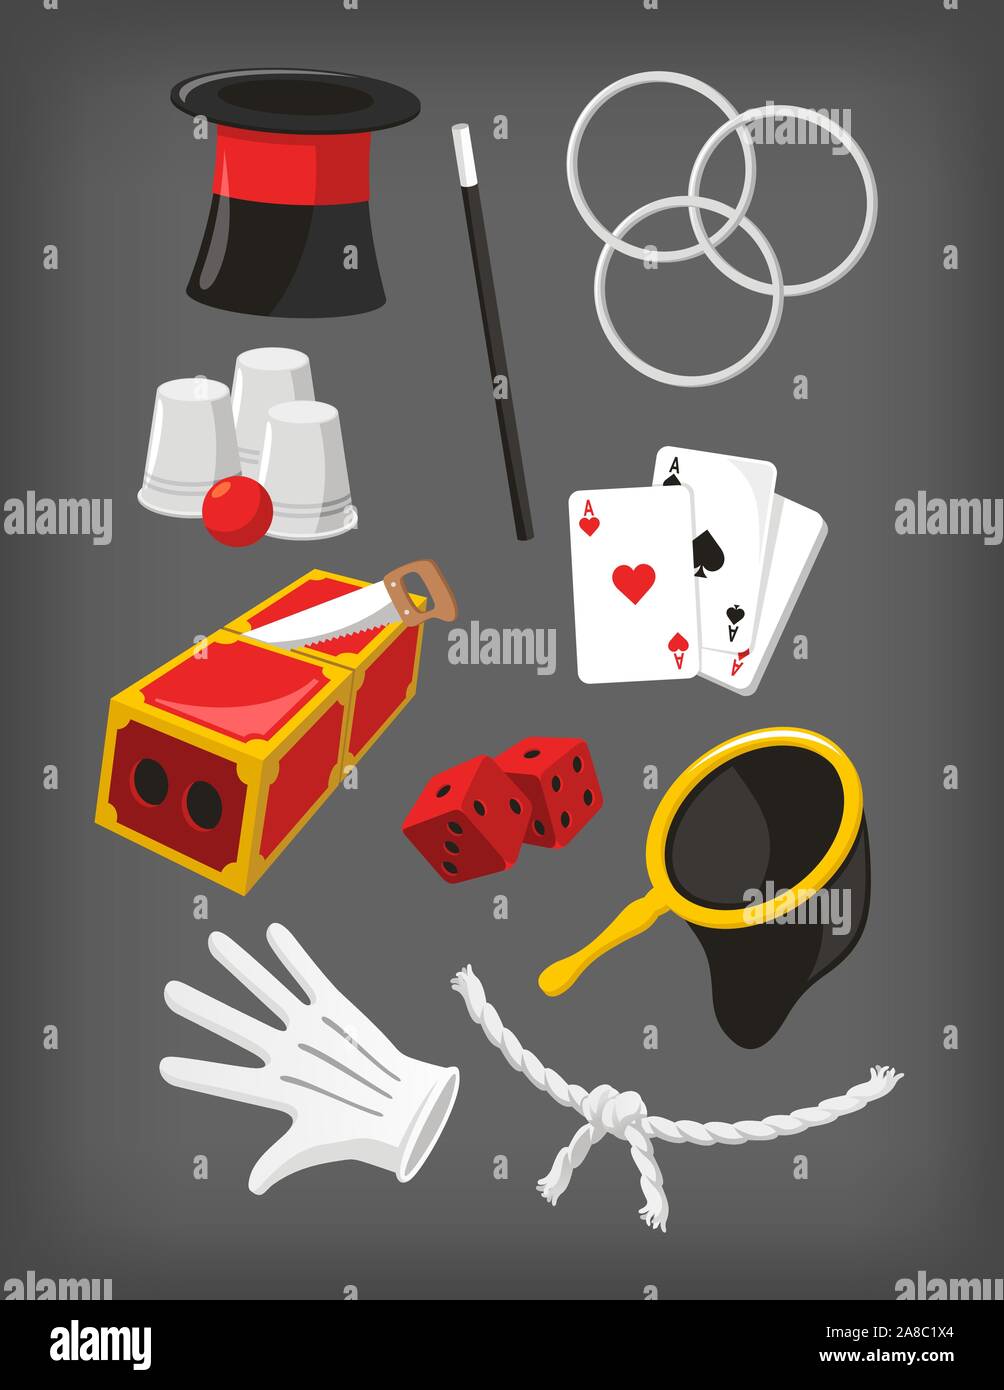 Icon Set magique, avec Magic Top Hat, Hoop, Baguette magique, dés, gants blancs, Ace, cartes, corde, Sac Magique Magic Box Trick, verres et la balle. Illustration de Vecteur